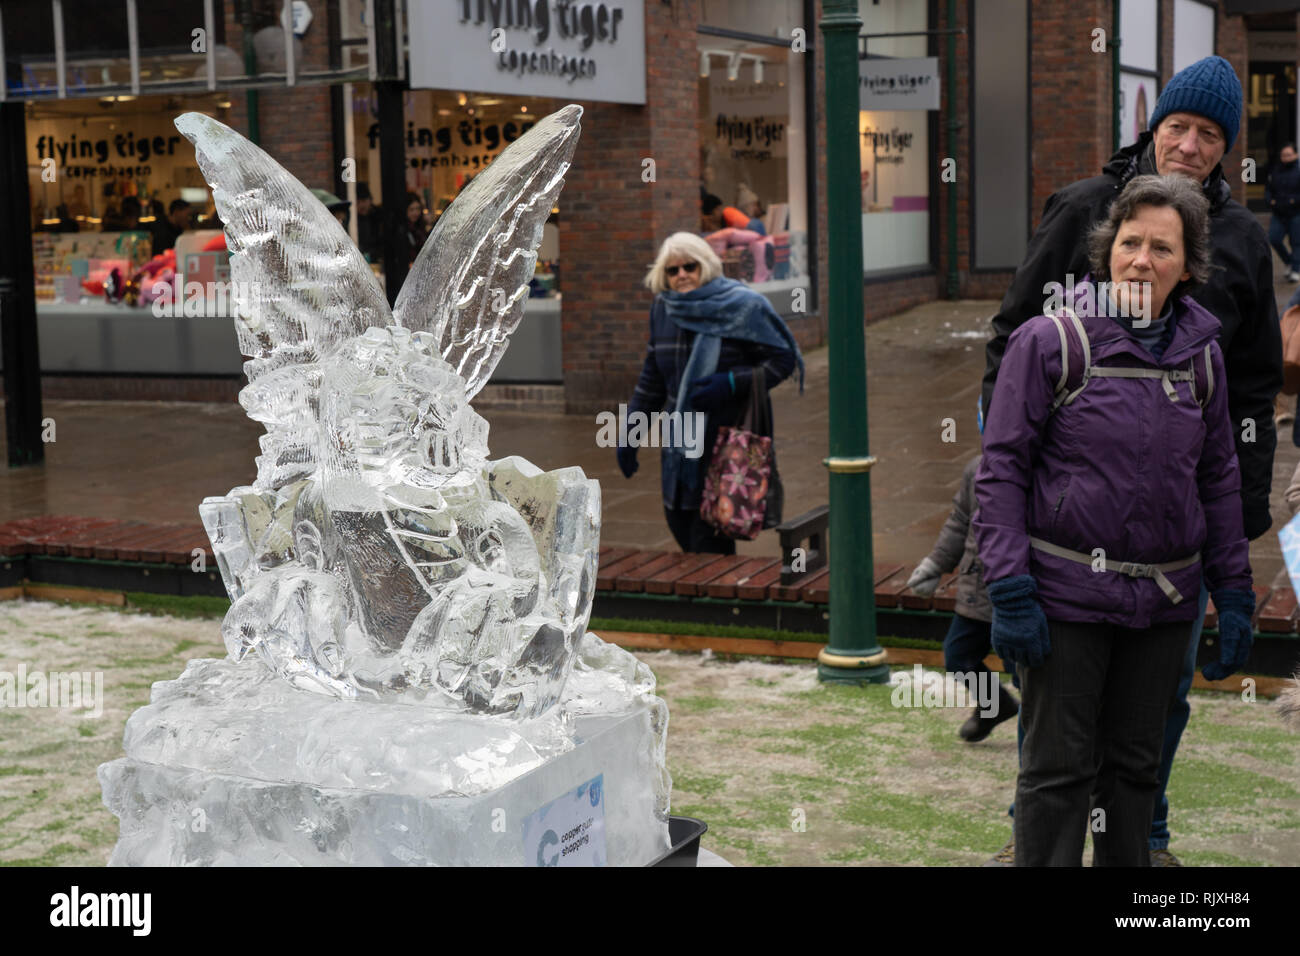 Les hommes et les femmes qui passent se latent étrangement de la sculpture sur glace à hayon Dragon, Myths and Legends York Ice Trail, North Yorkshire, Angleterre, Royaume-Uni. Banque D'Images